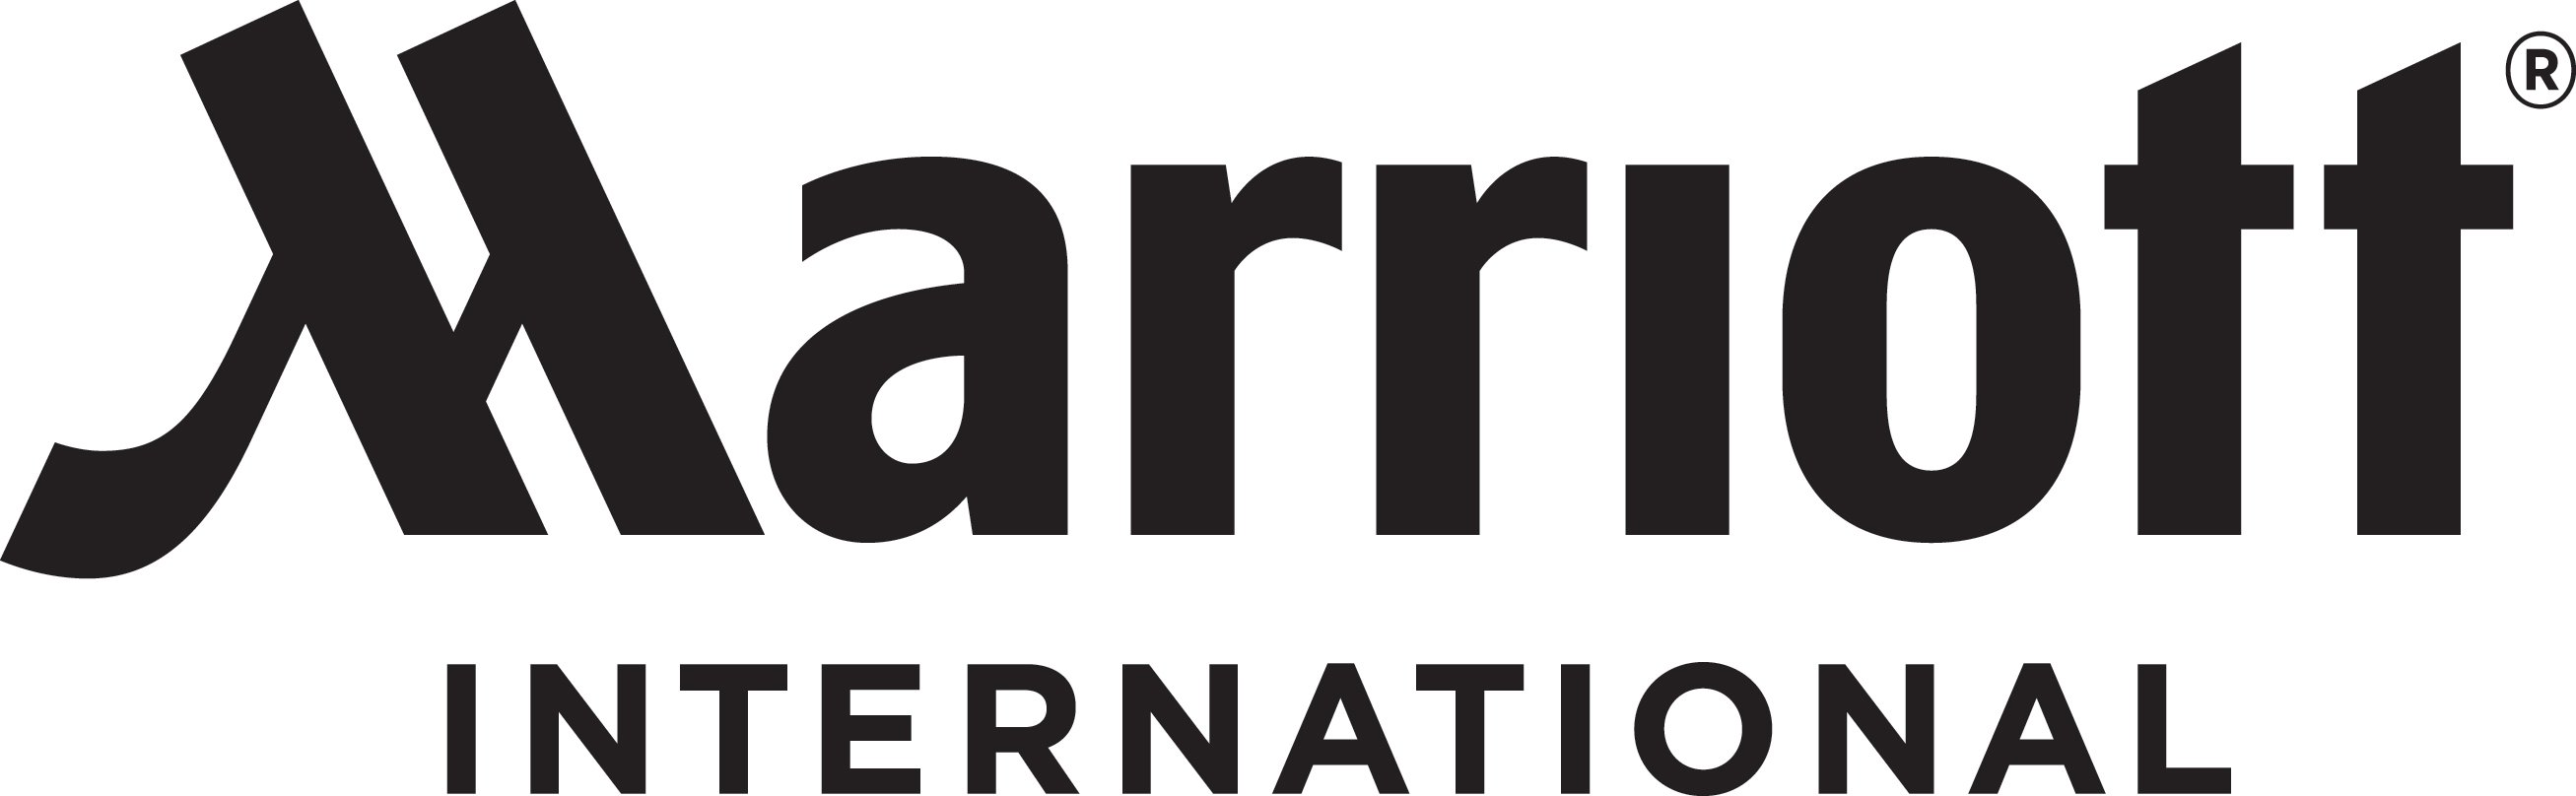 Marriott International | Hospitality Investor